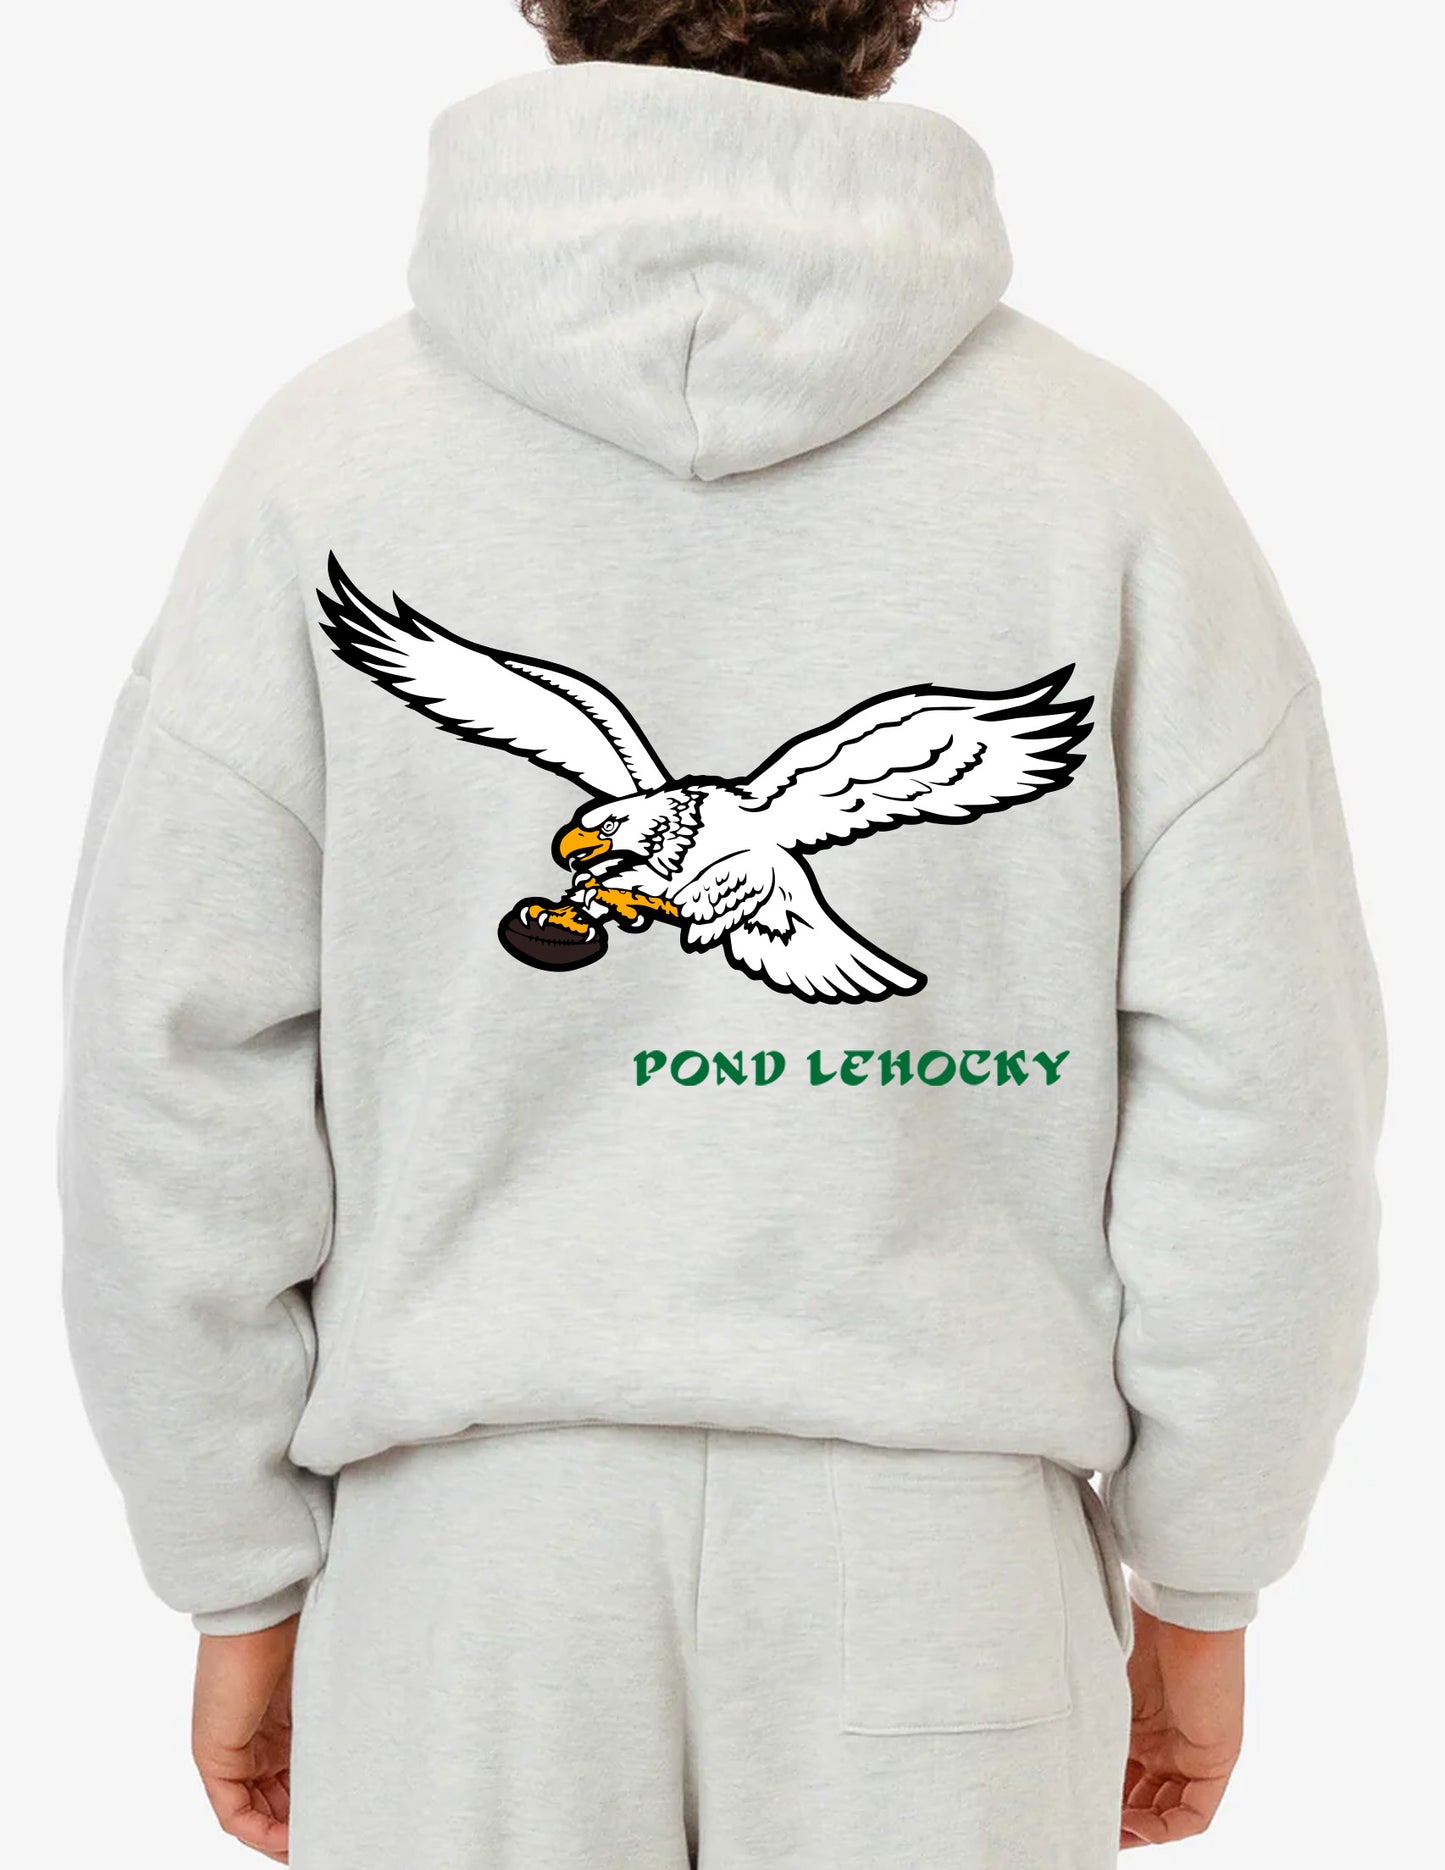 Philadelphia Eagles x Pond Lehocky Gray Hoodie